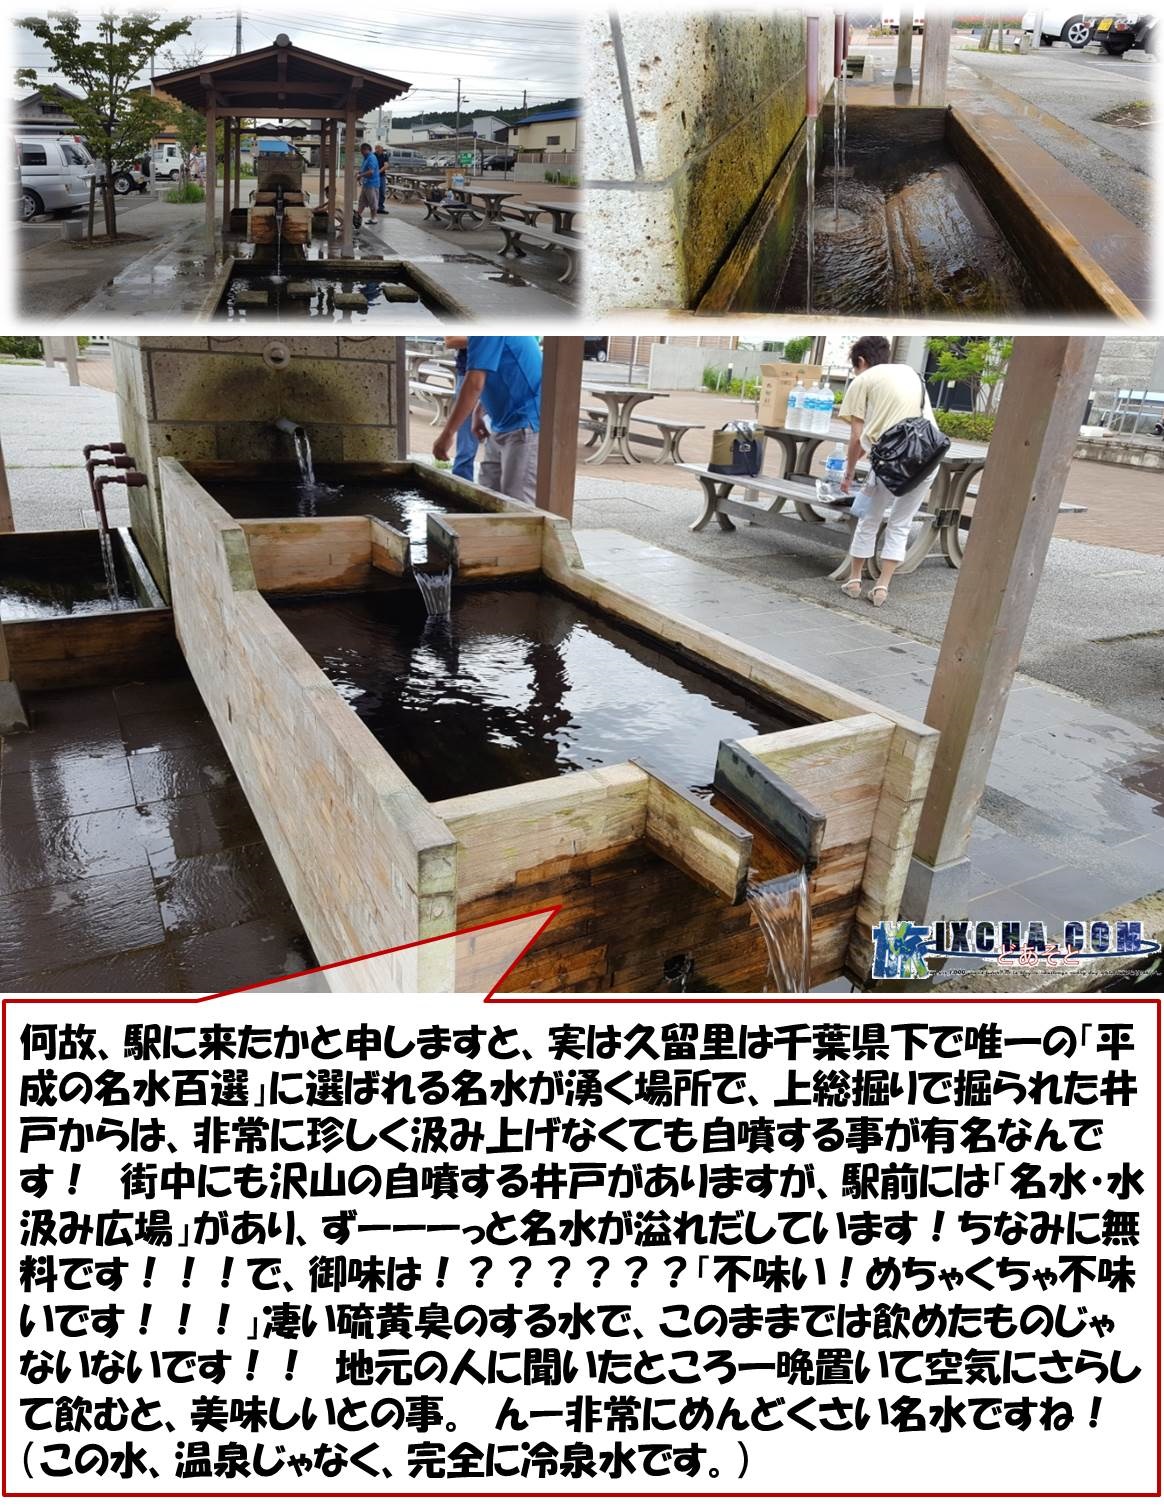 何故、駅に来たかと申しますと、実は久留里は千葉県下で唯一の「平成の名水百選」に選ばれる名水が湧く場所で、上総掘りで掘られた井戸からは、非常に珍しく汲み上げなくても自噴する事が有名なんです！　街中にも沢山の自噴する井戸がありますが、駅前には「名水・水汲み広場」があり、ずーーーっと名水が溢れだしています！ちなみに無料です！！！で、御味は！？？？？？？「不味い！めちゃくちゃ不味いです！！！」凄い硫黄臭のする水で、このままでは飲めたものじゃないないです！！　地元の人に聞いたところ一晩置いて空気にさらして飲むと、美味しいとの事。　んー非常にめんどくさい名水ですね！（この水、温泉じゃなく、完全に冷泉水です。）